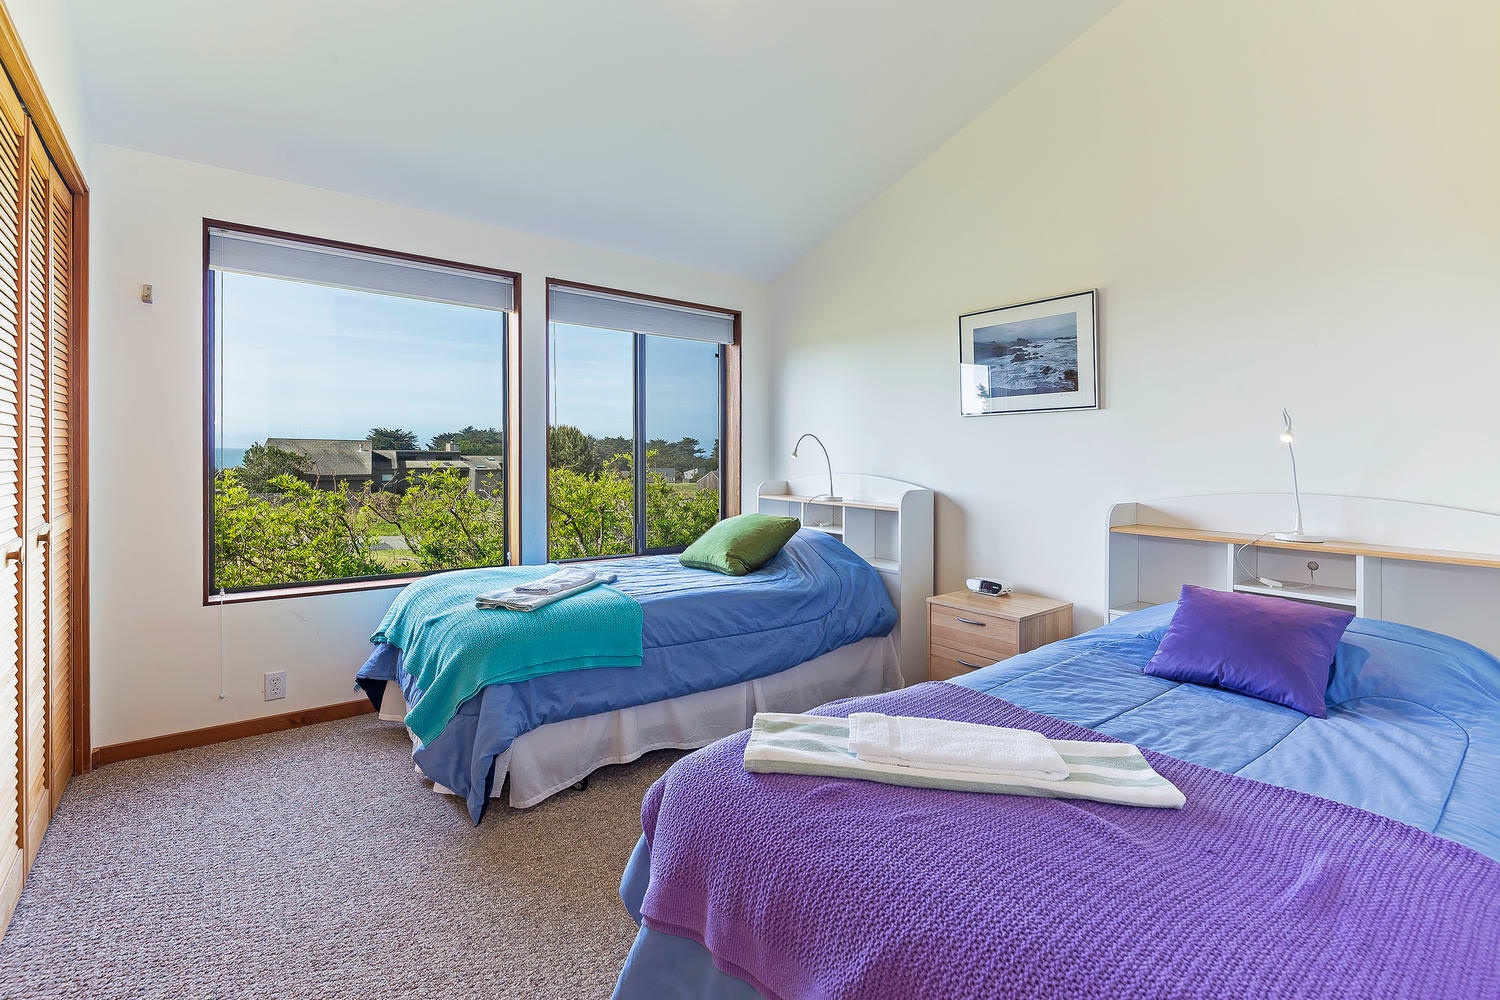 3rd Bedroom: Twin Beds with ocean views